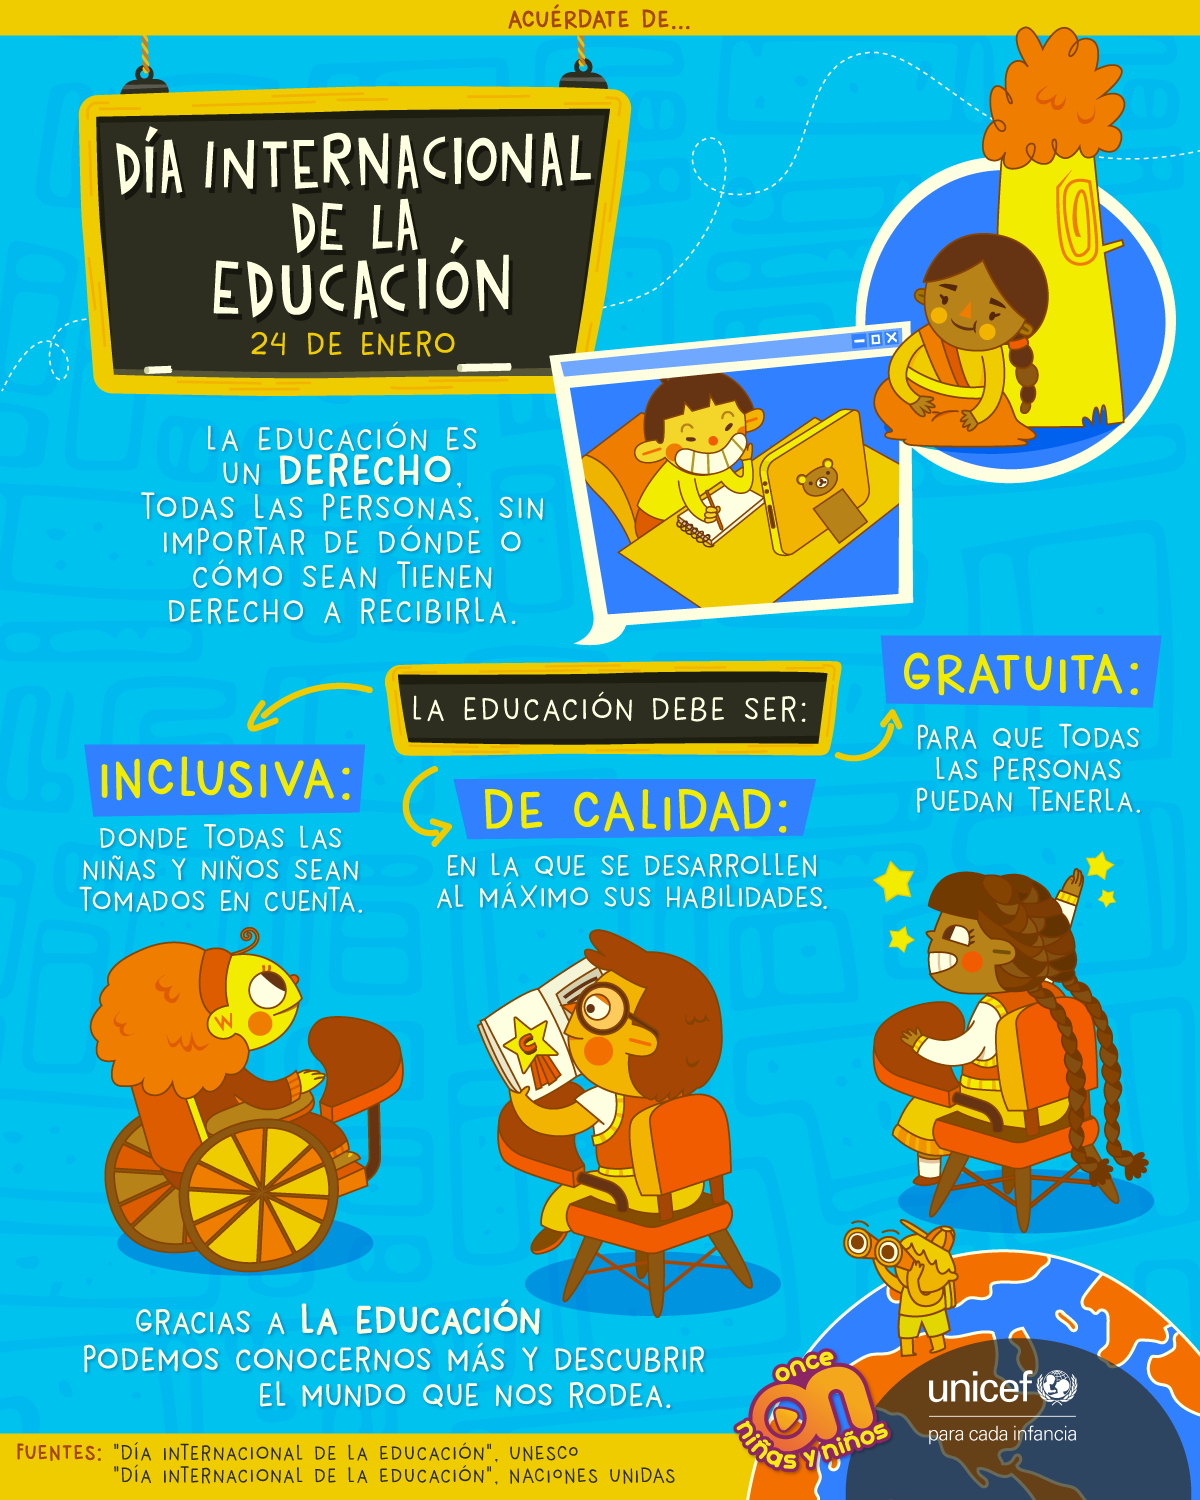 Día Internacional de la Educación
24 de enero.
UNICEF
Derecho a la Educación
Once Niñas y Niños 